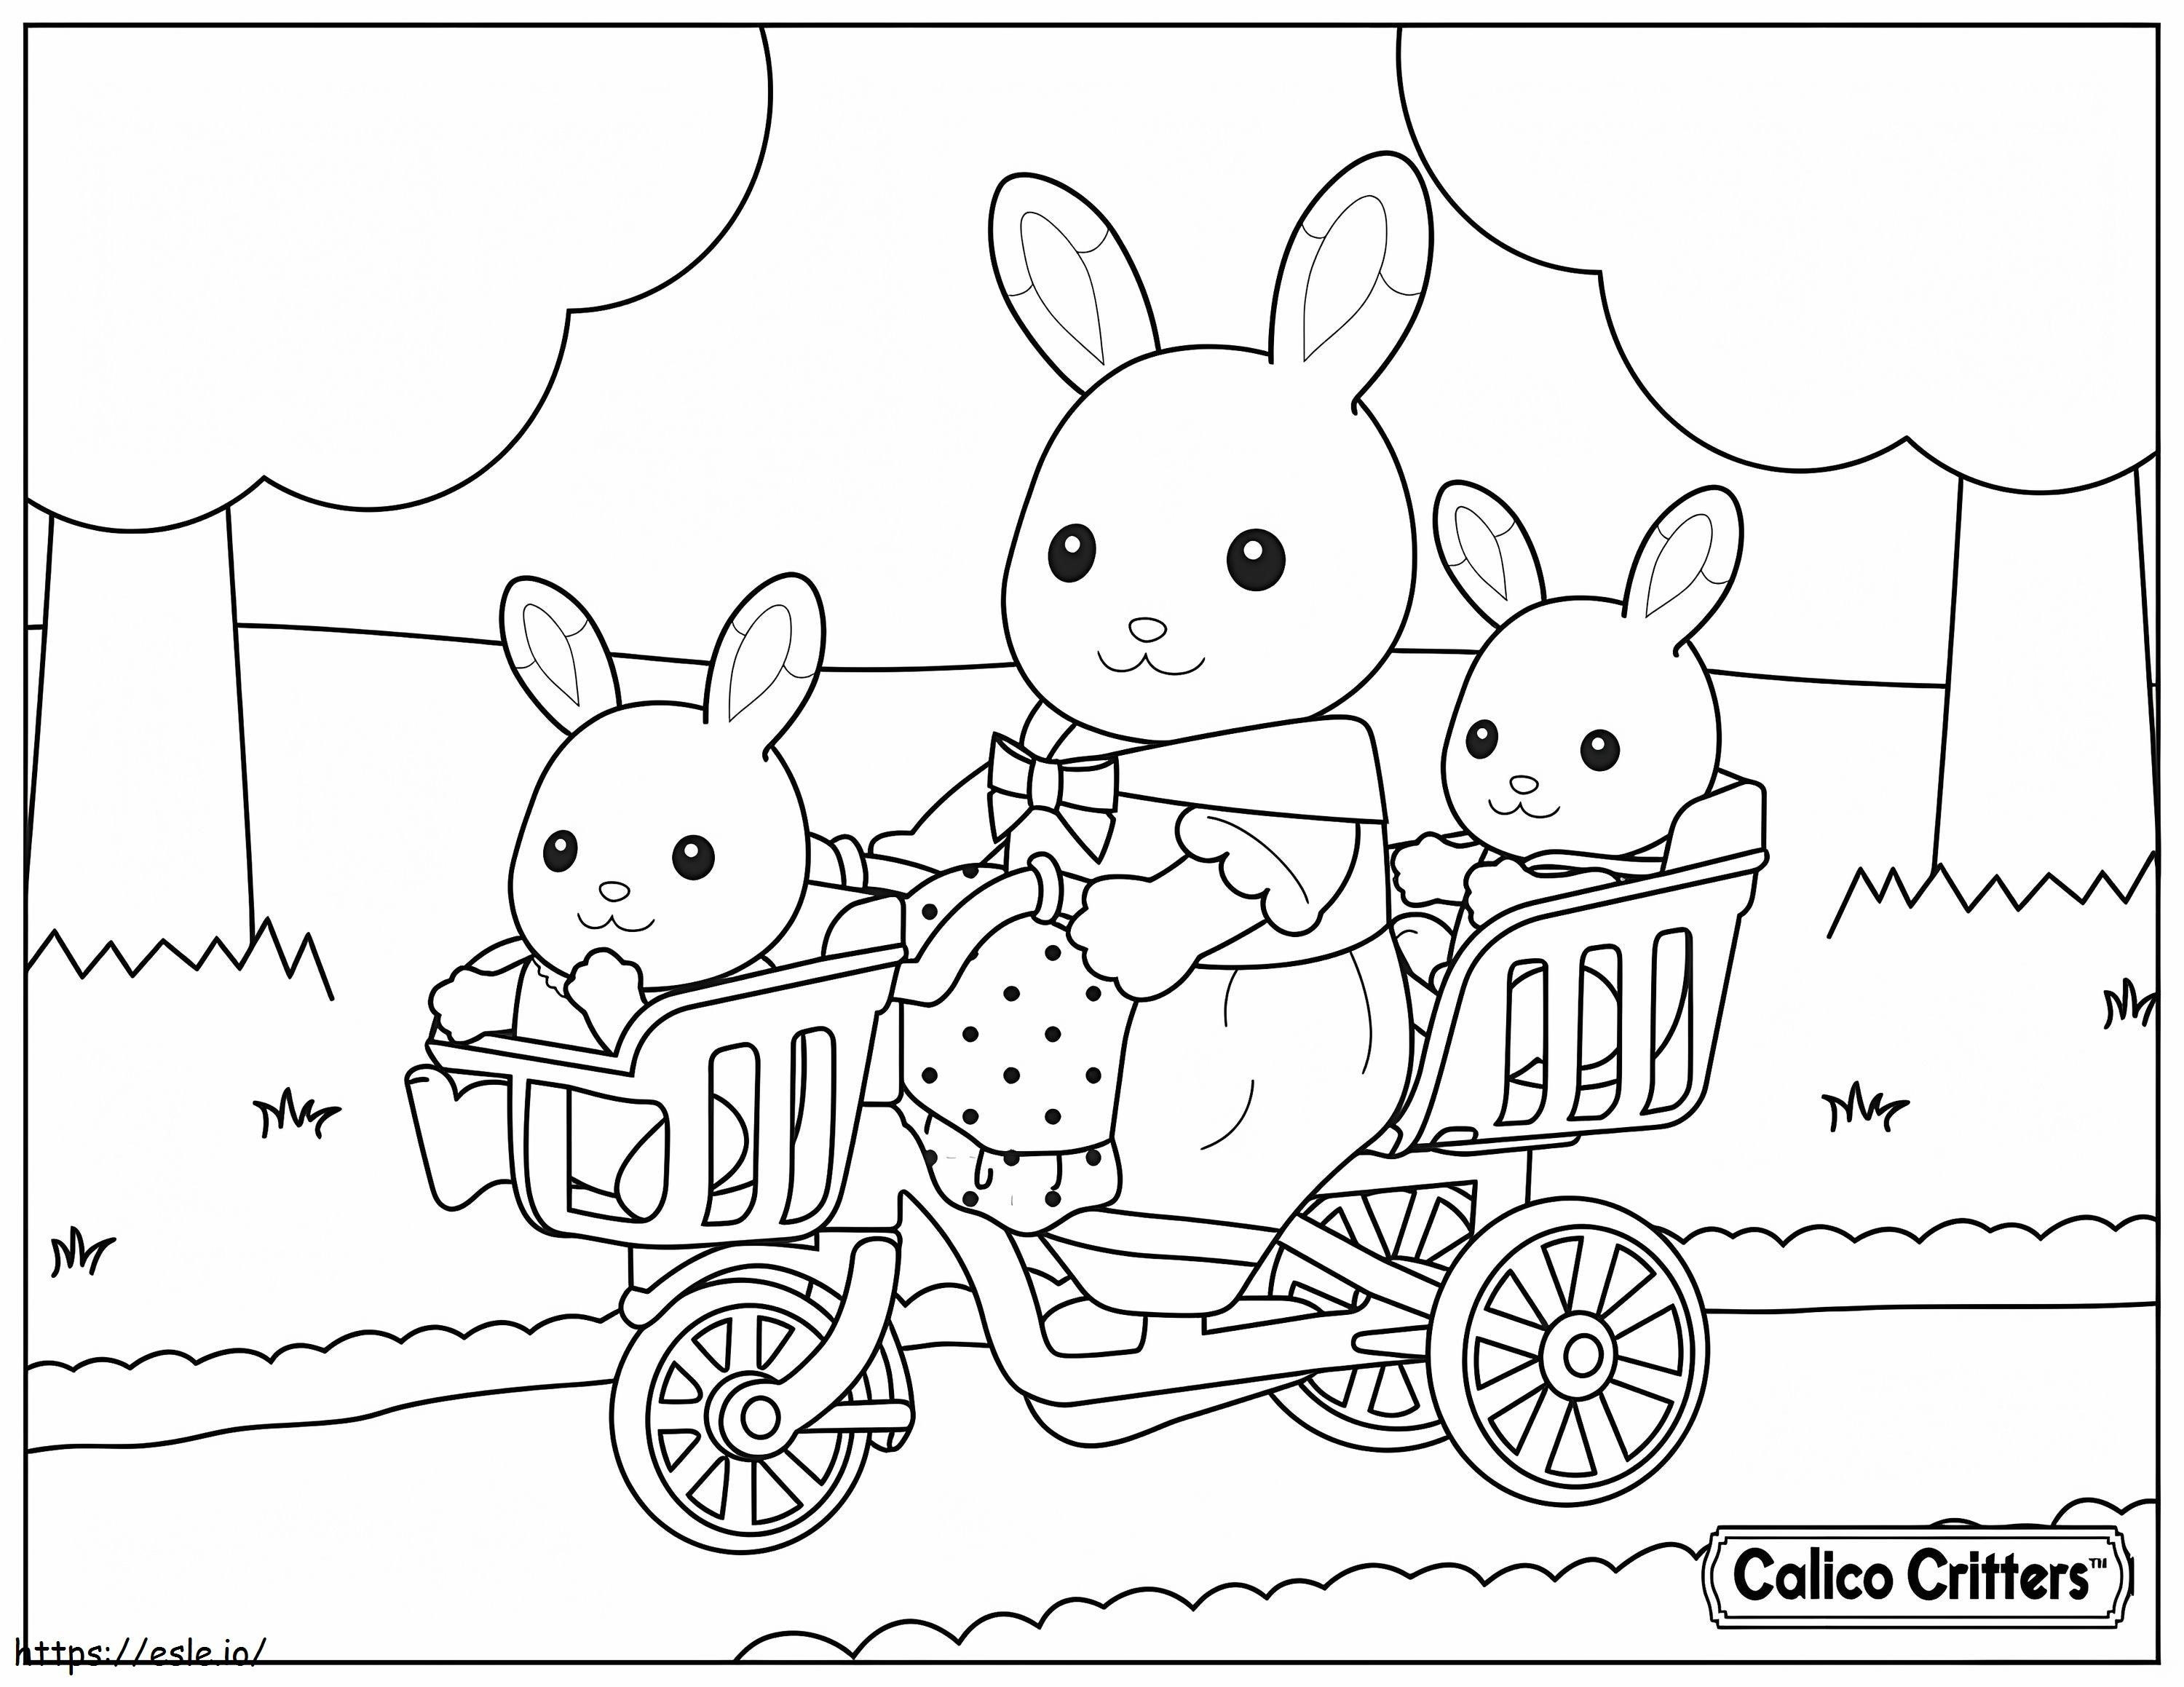  1515174989Calico Critters cu bicicletă pentru bebeluși de colorat